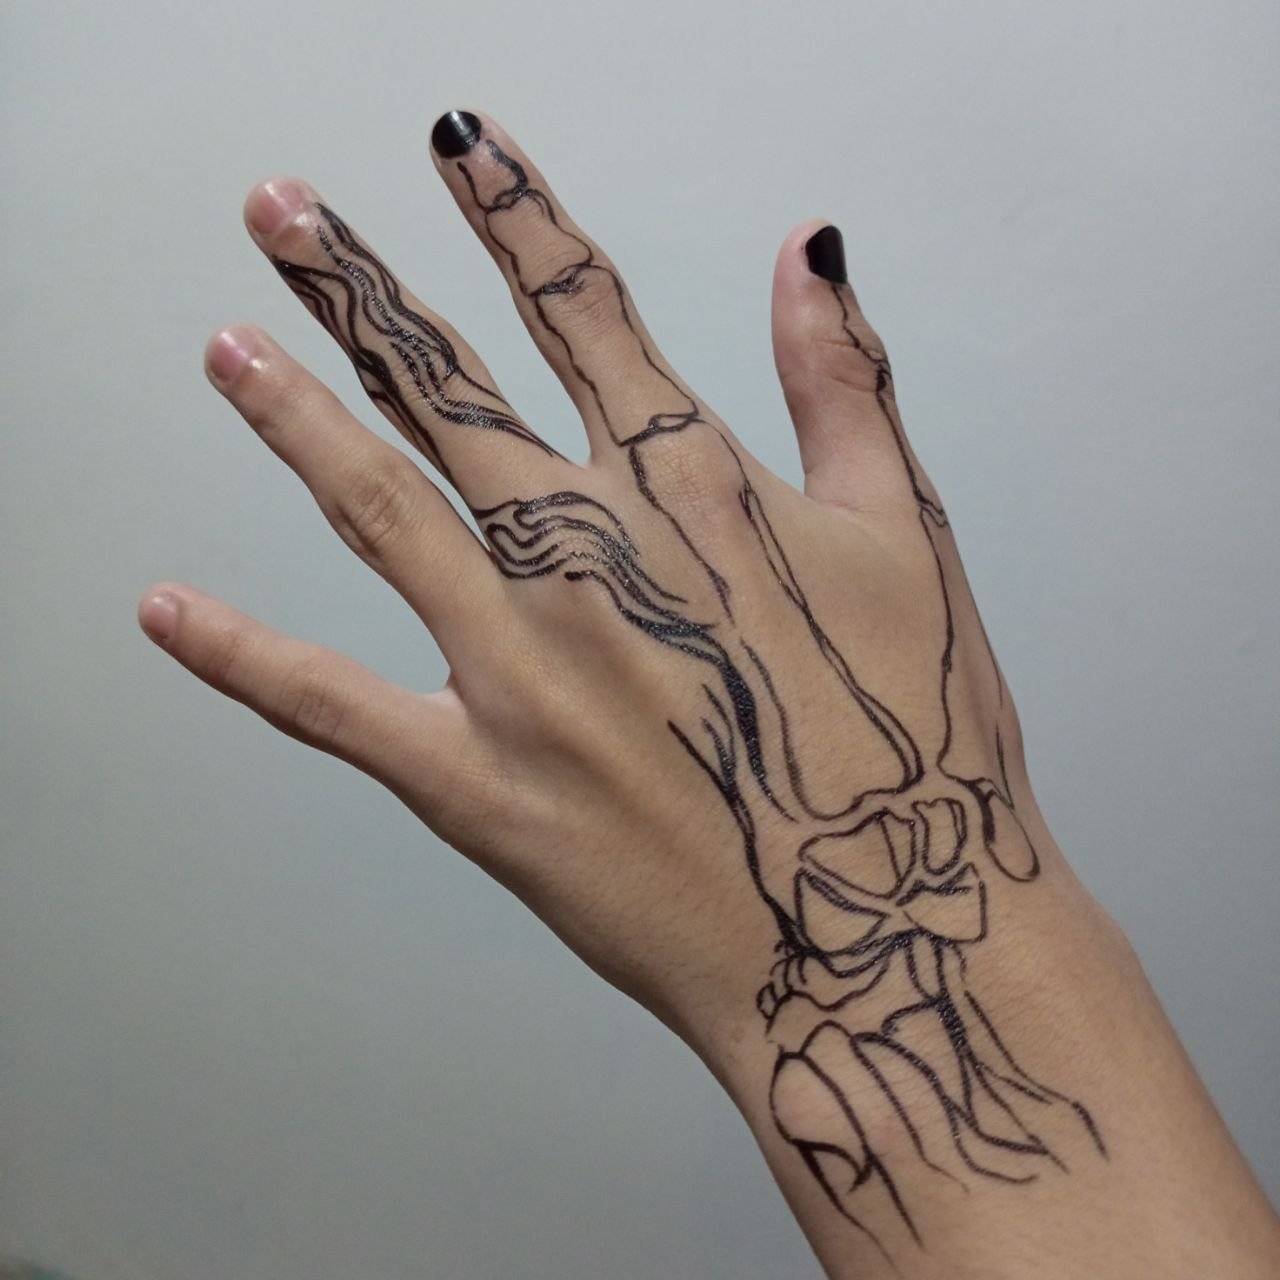 Skeleton Hands | A creative and easy body art idea  Manos de esqueleto |  Una idea creativa y fácil de arte corporal | PeakD